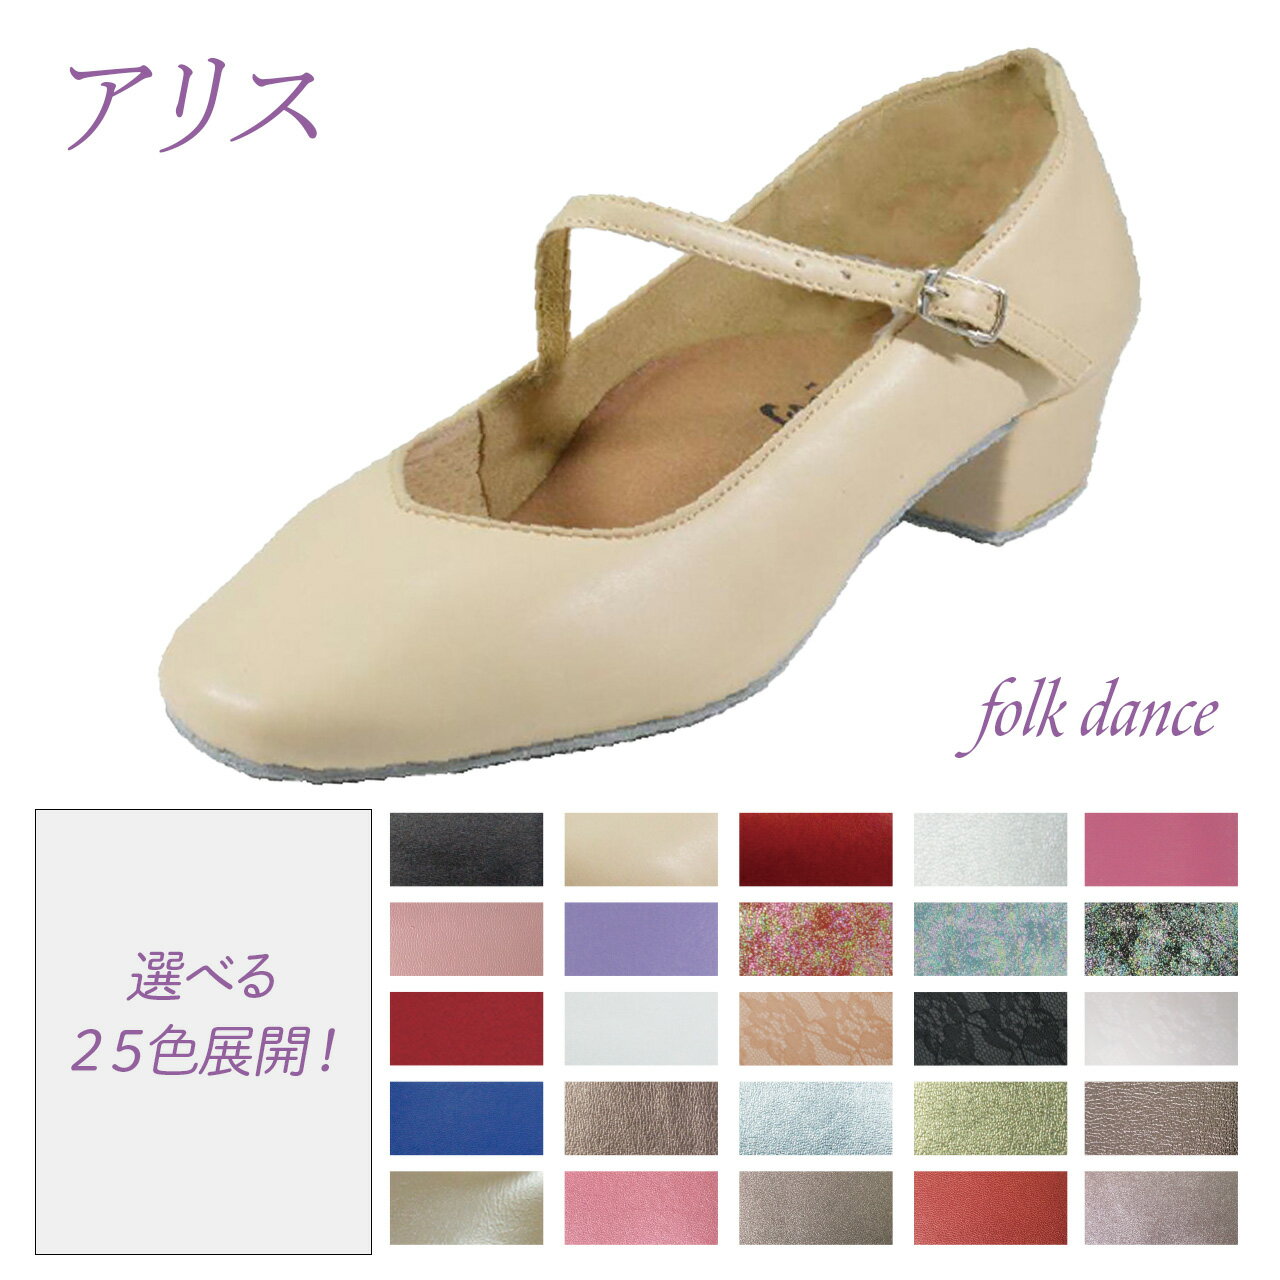 【アリス】フォークダンス ディスコダンス レクダ...の商品画像